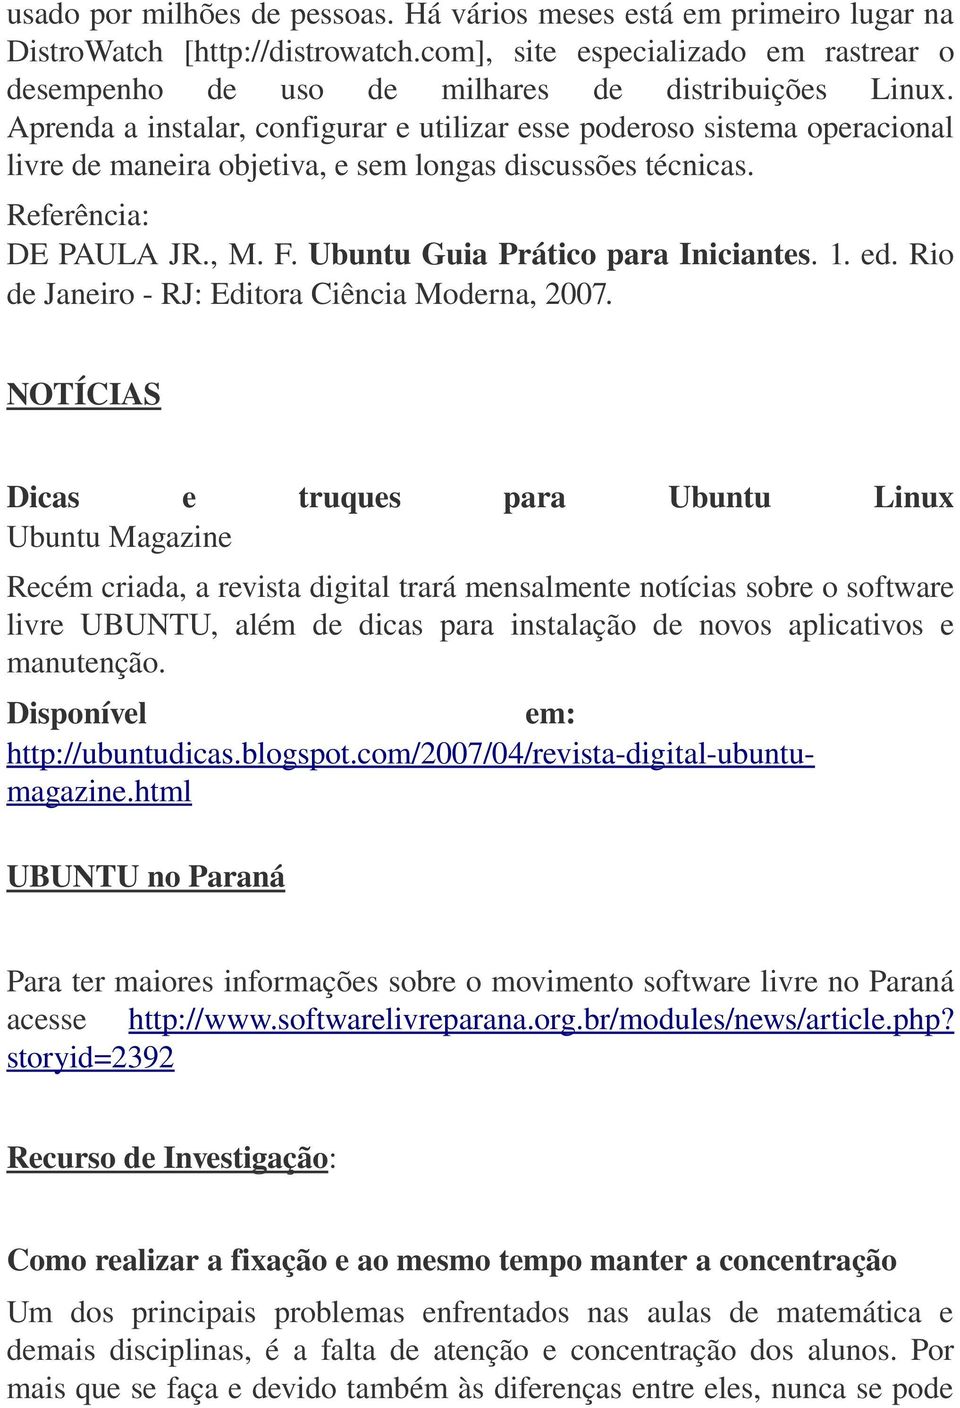 Ubuntu Guia Prático para Iniciantes. 1. ed. Rio de Janeiro RJ: Editora Ciência Moderna, 2007.